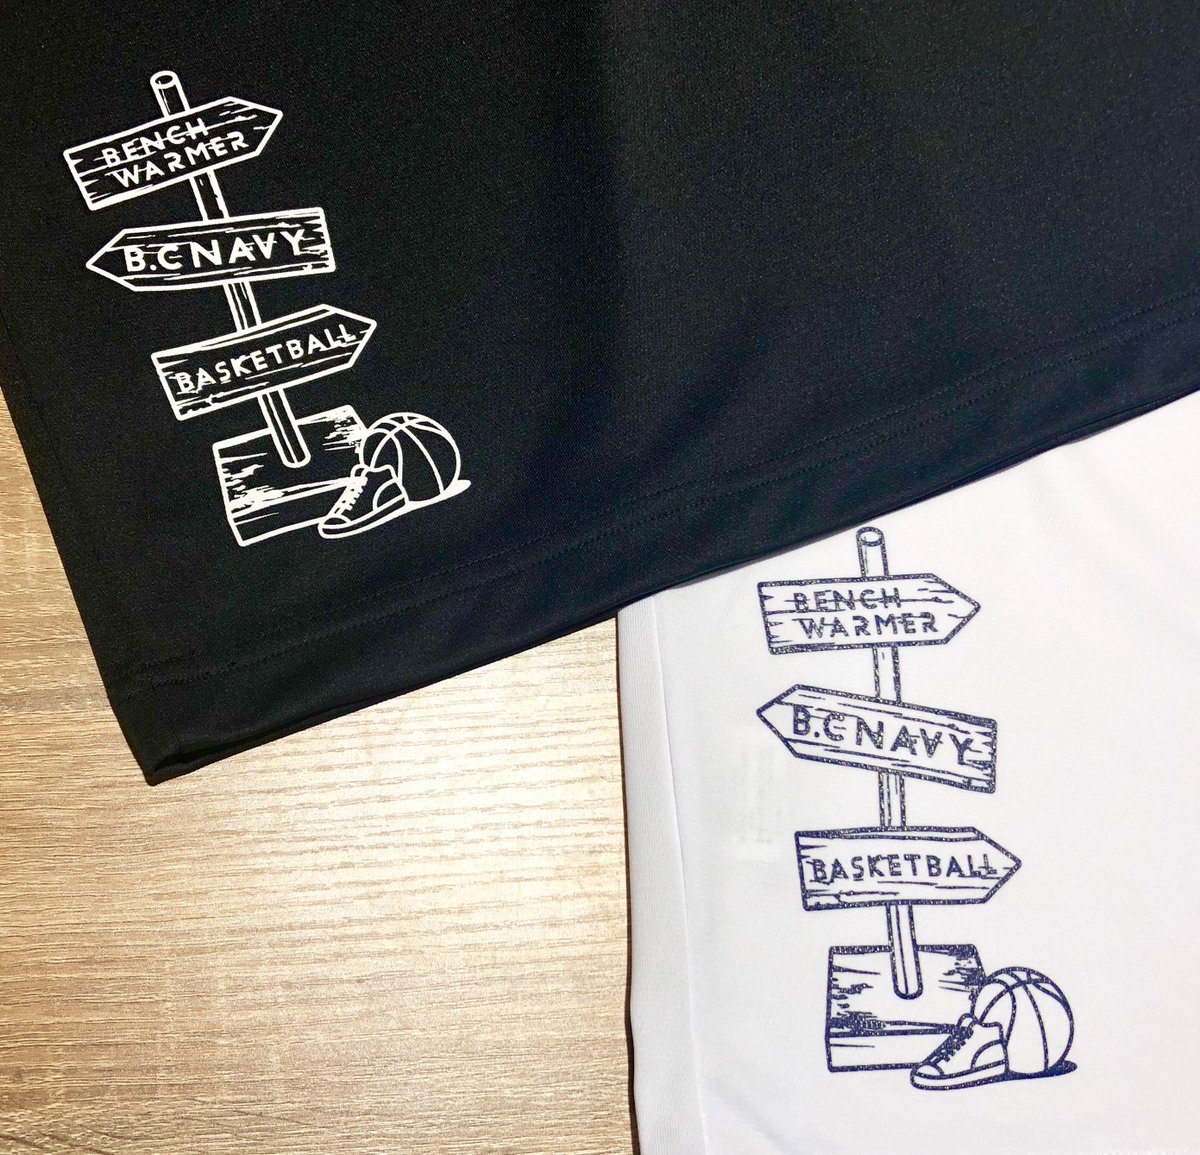 パワーハウス横浜 商品紹介 Bench Warmer のtシャツ 矢印のデザインがおしゃれ 裏にもワンポイントデザインが ただ今団体割が行われています 是非練習後などにお越しください